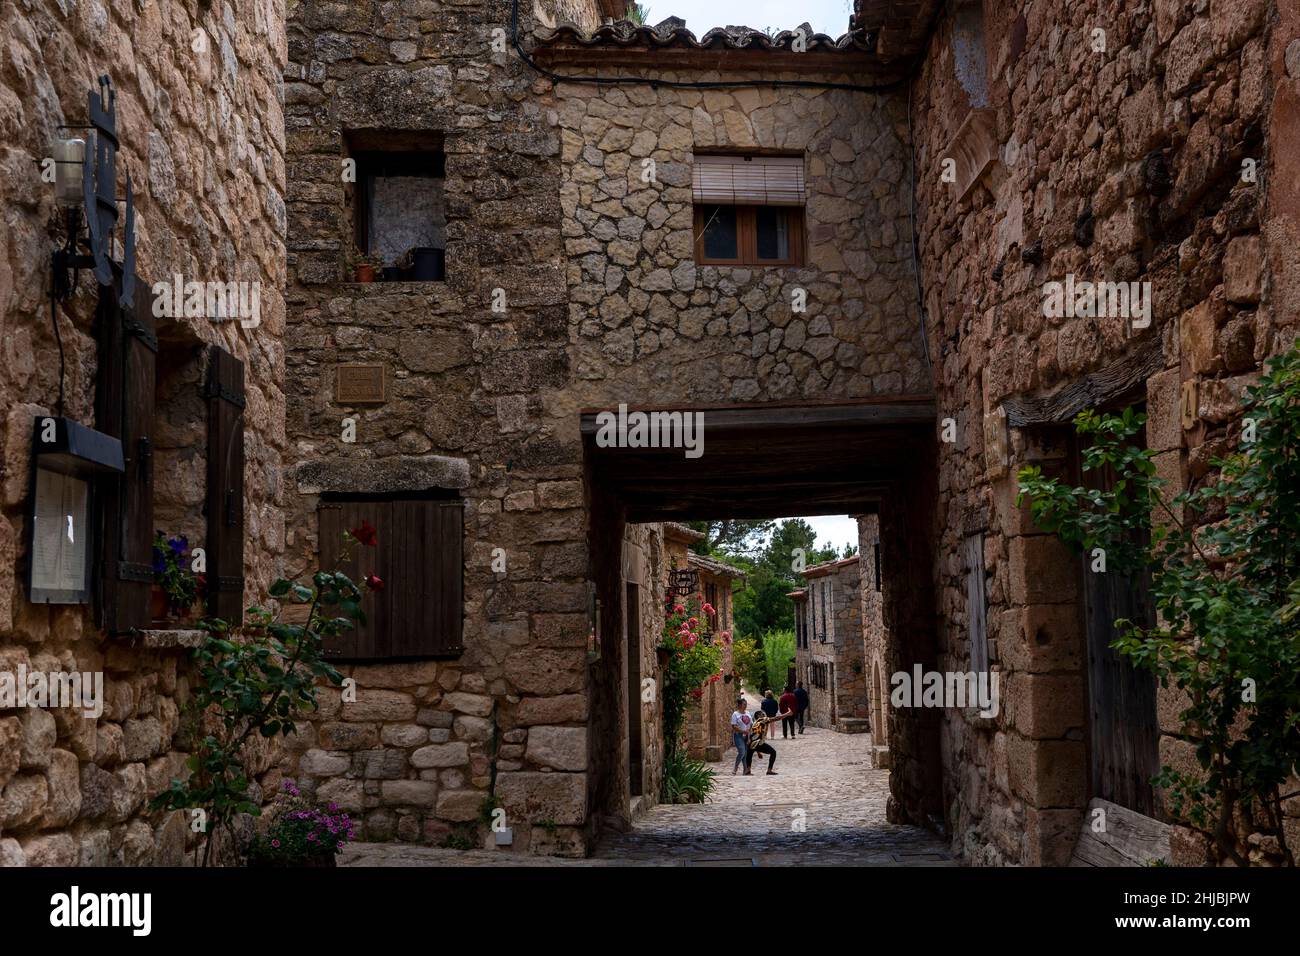 The clifftop village of Siurana, in the municipality of the Cornudella de Montsant in the comarca of Priorat, Tarragona, Catalonia, Spain. It was repo Stock Photo